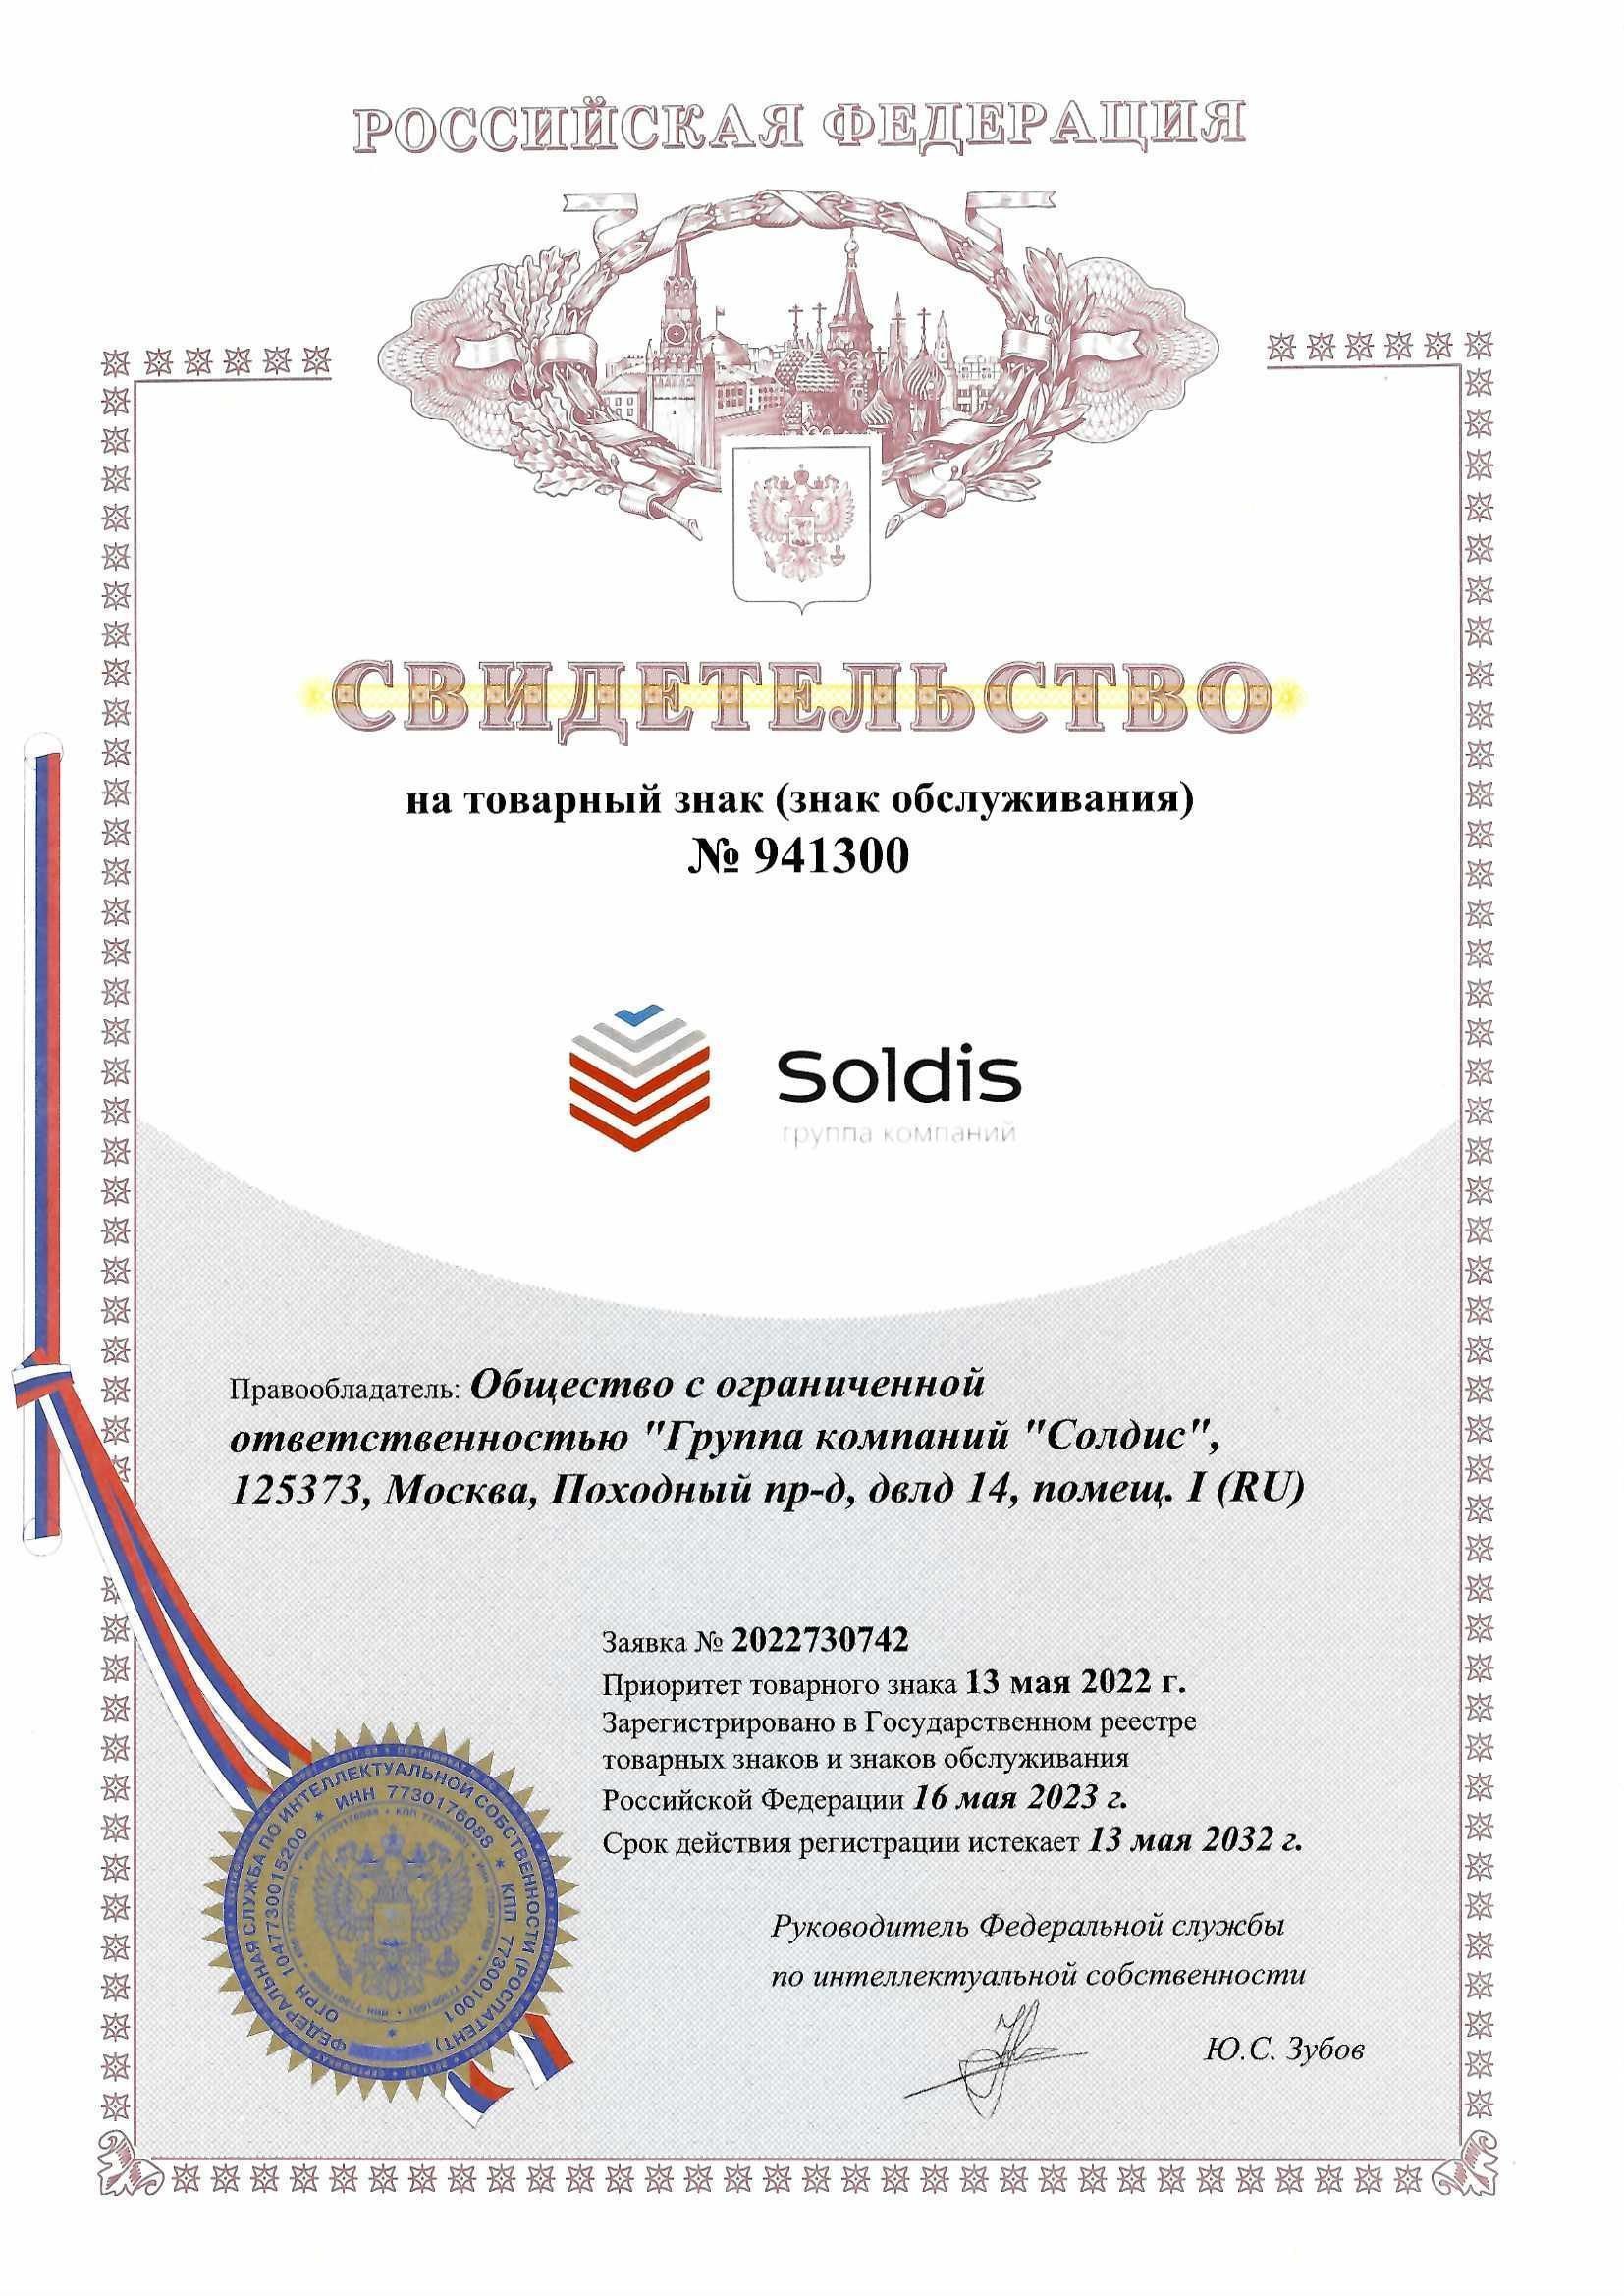 Товарный знак № 941300 – Soldis